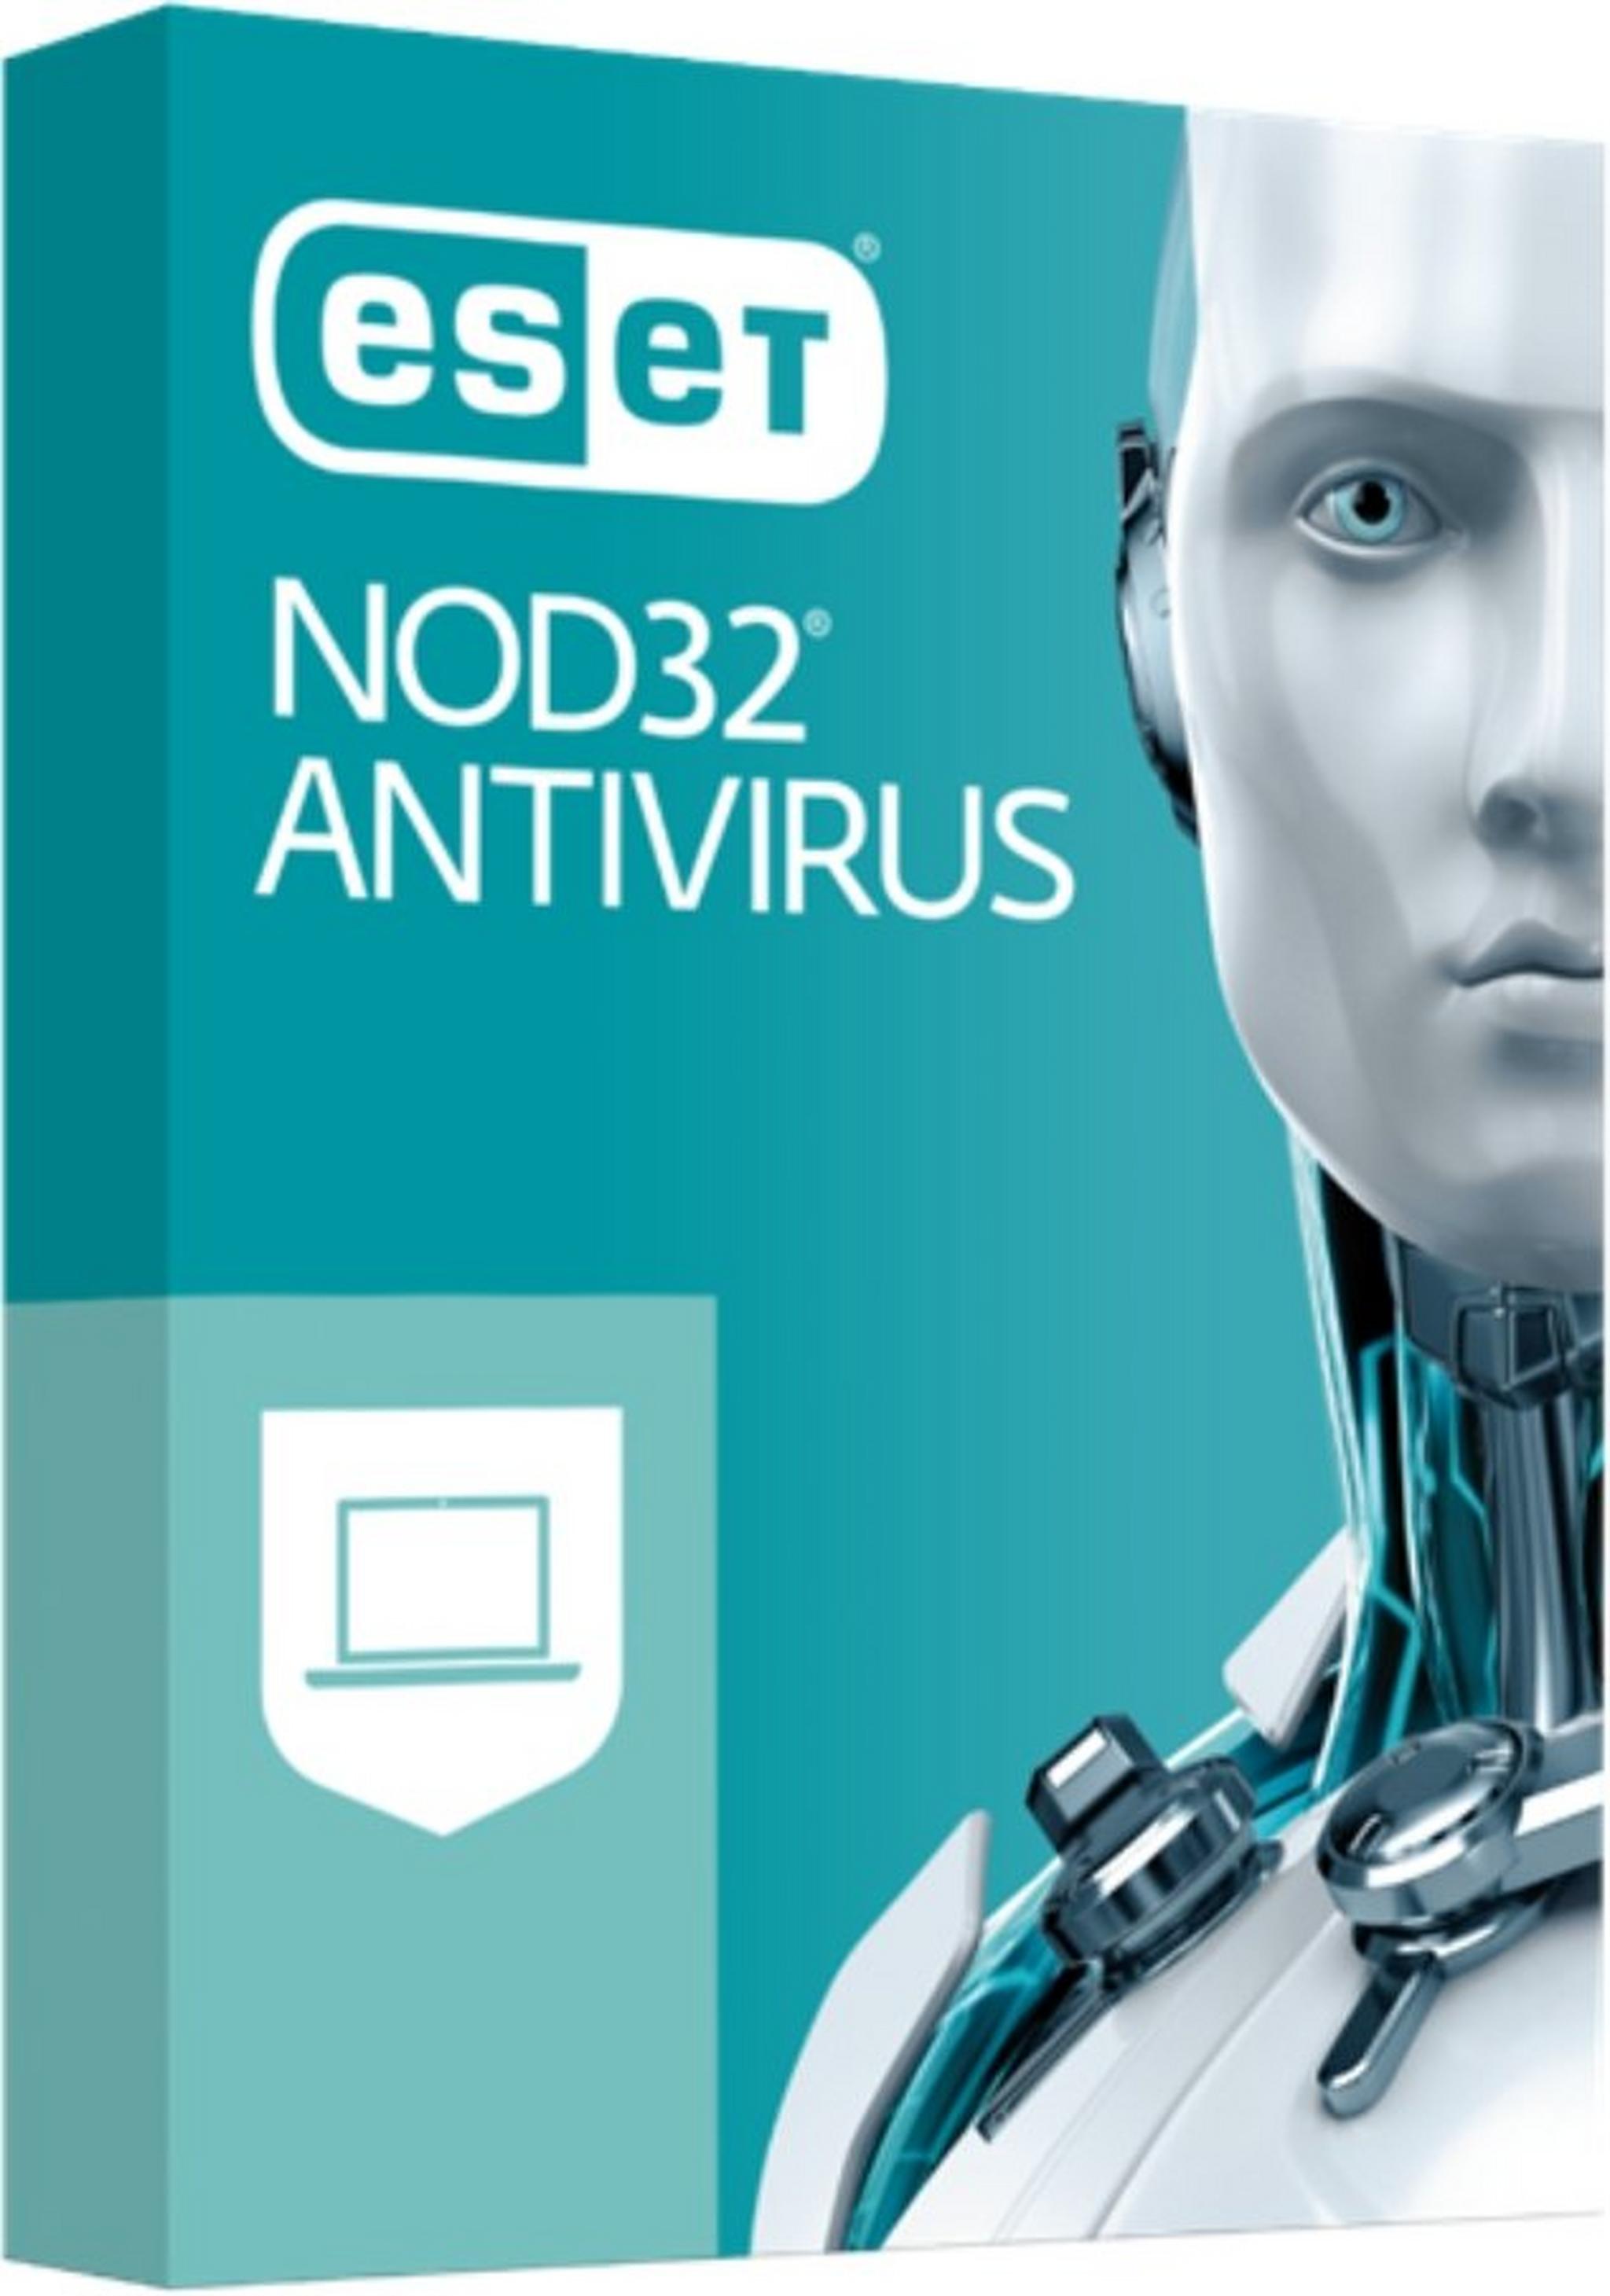 برنامج مكافحة الفيروسات إسيت نود 32  - 4 مستخدمين